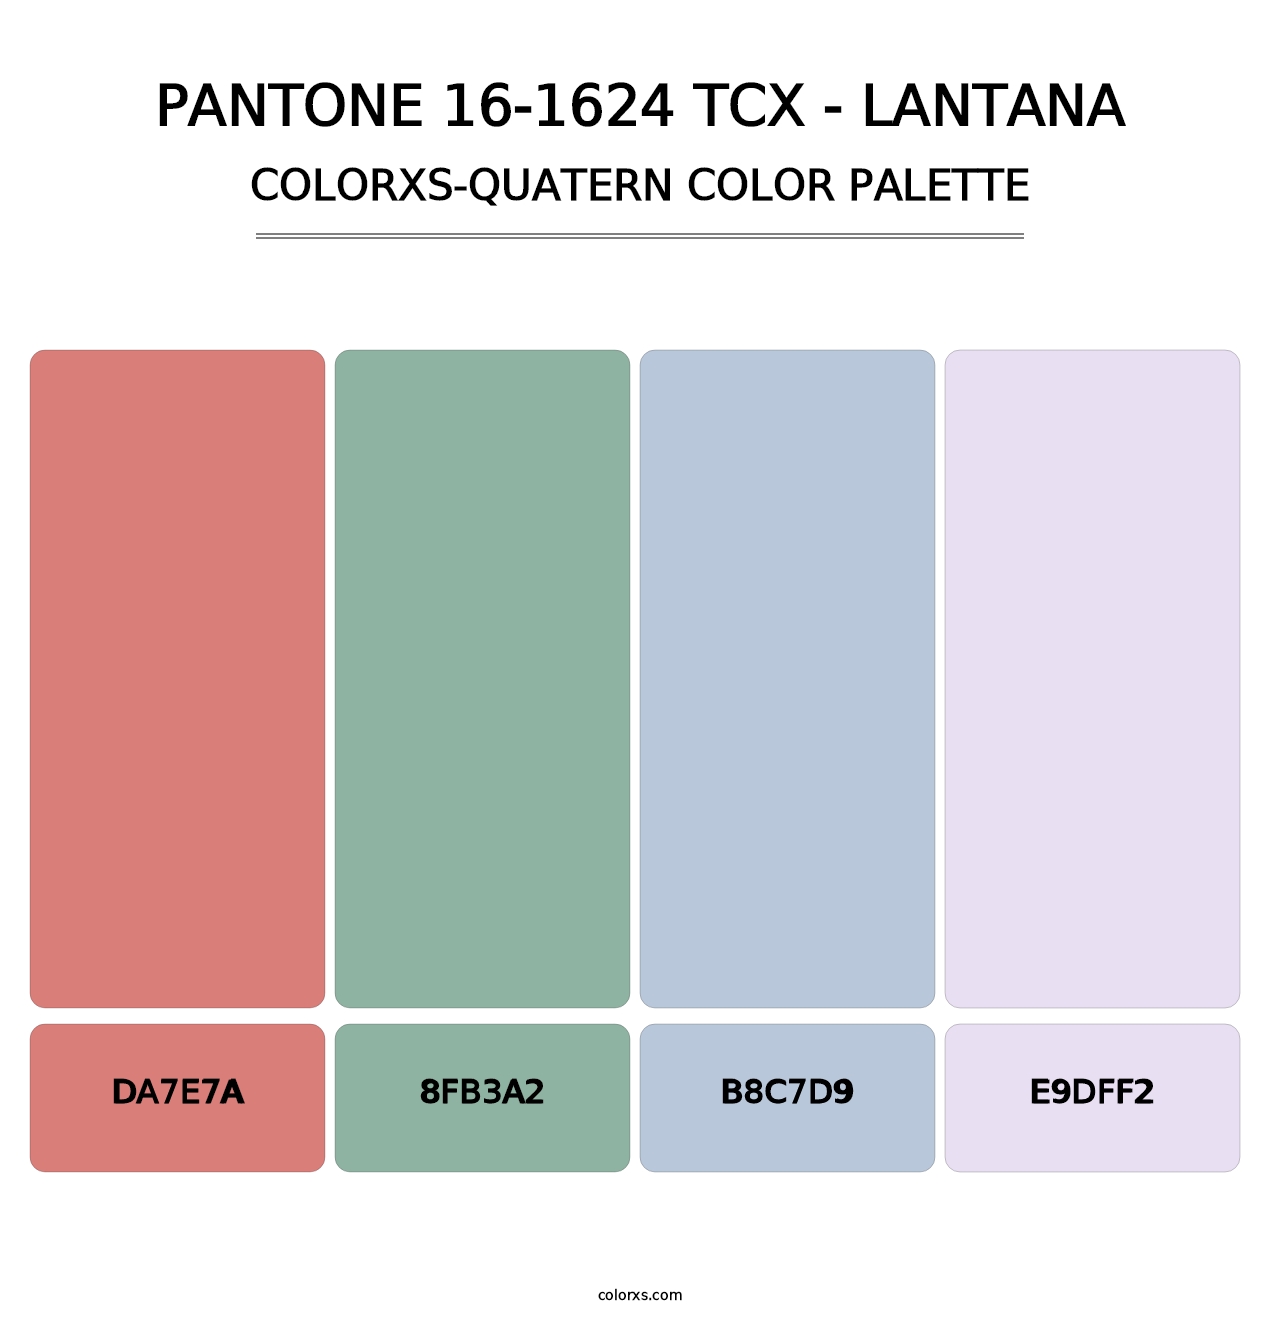 PANTONE 16-1624 TCX - Lantana - Colorxs Quatern Palette